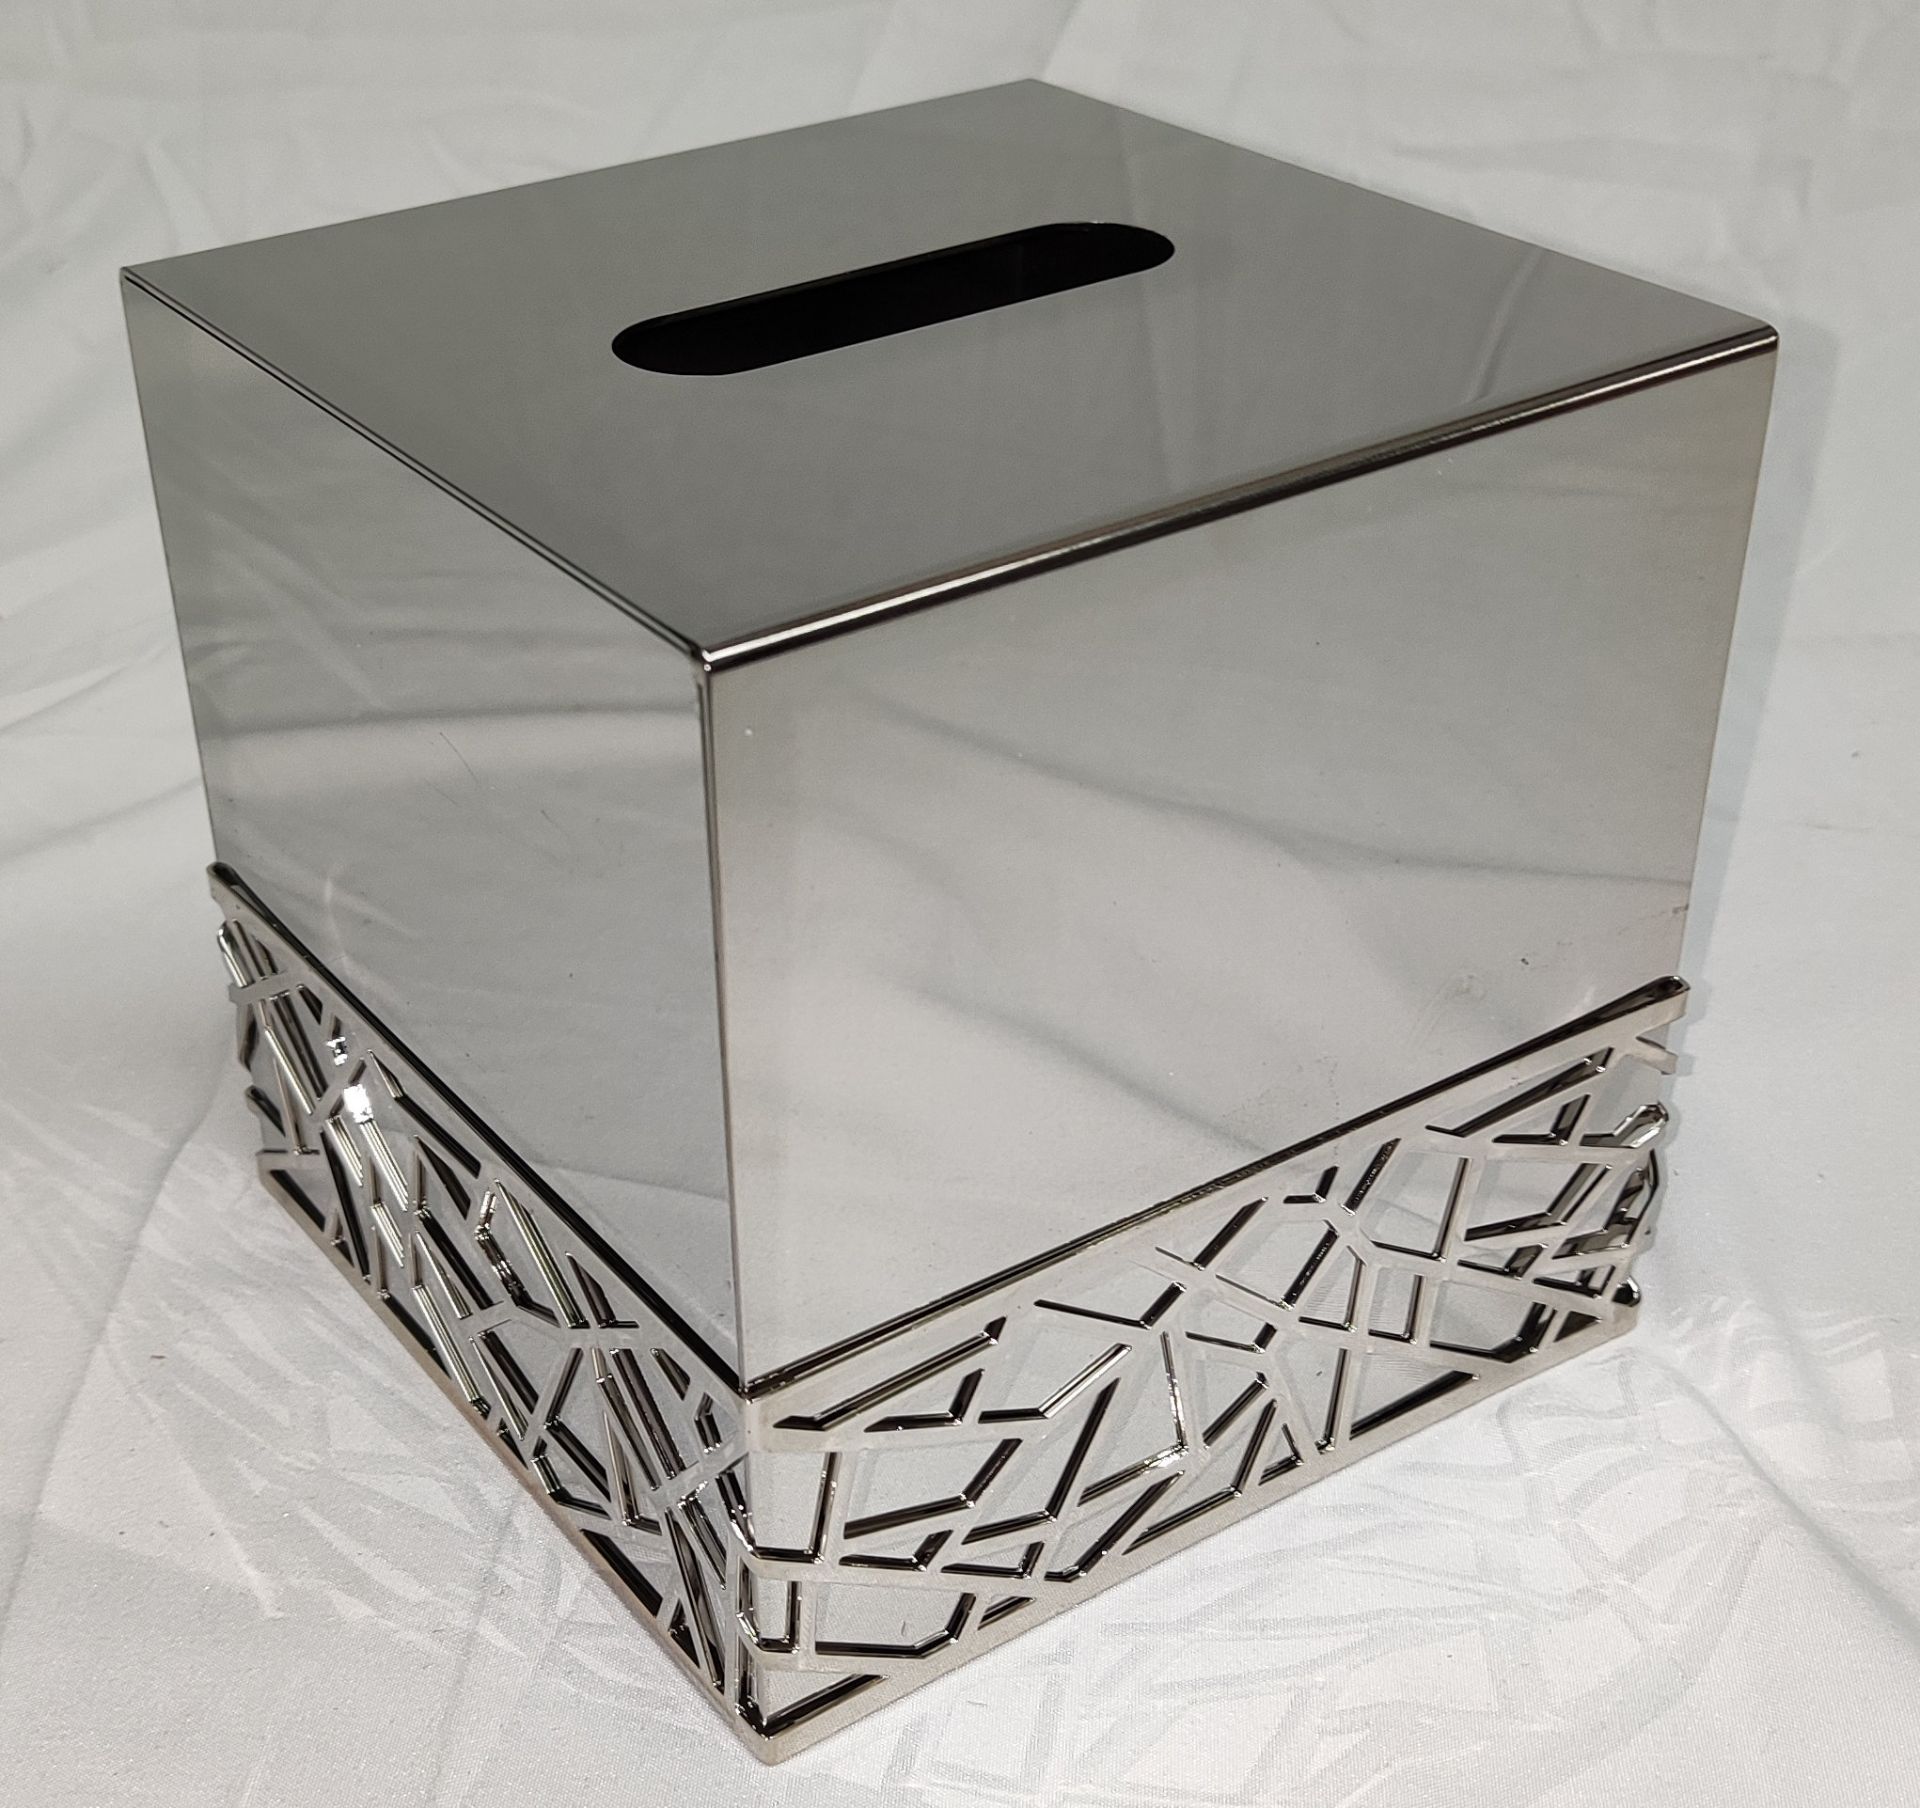 1 x VILLARI Hiroito Square Tissue Box - Chrome Plated - Boxed - Original RRP £529 - Ref: 6125321/ - Image 8 of 17